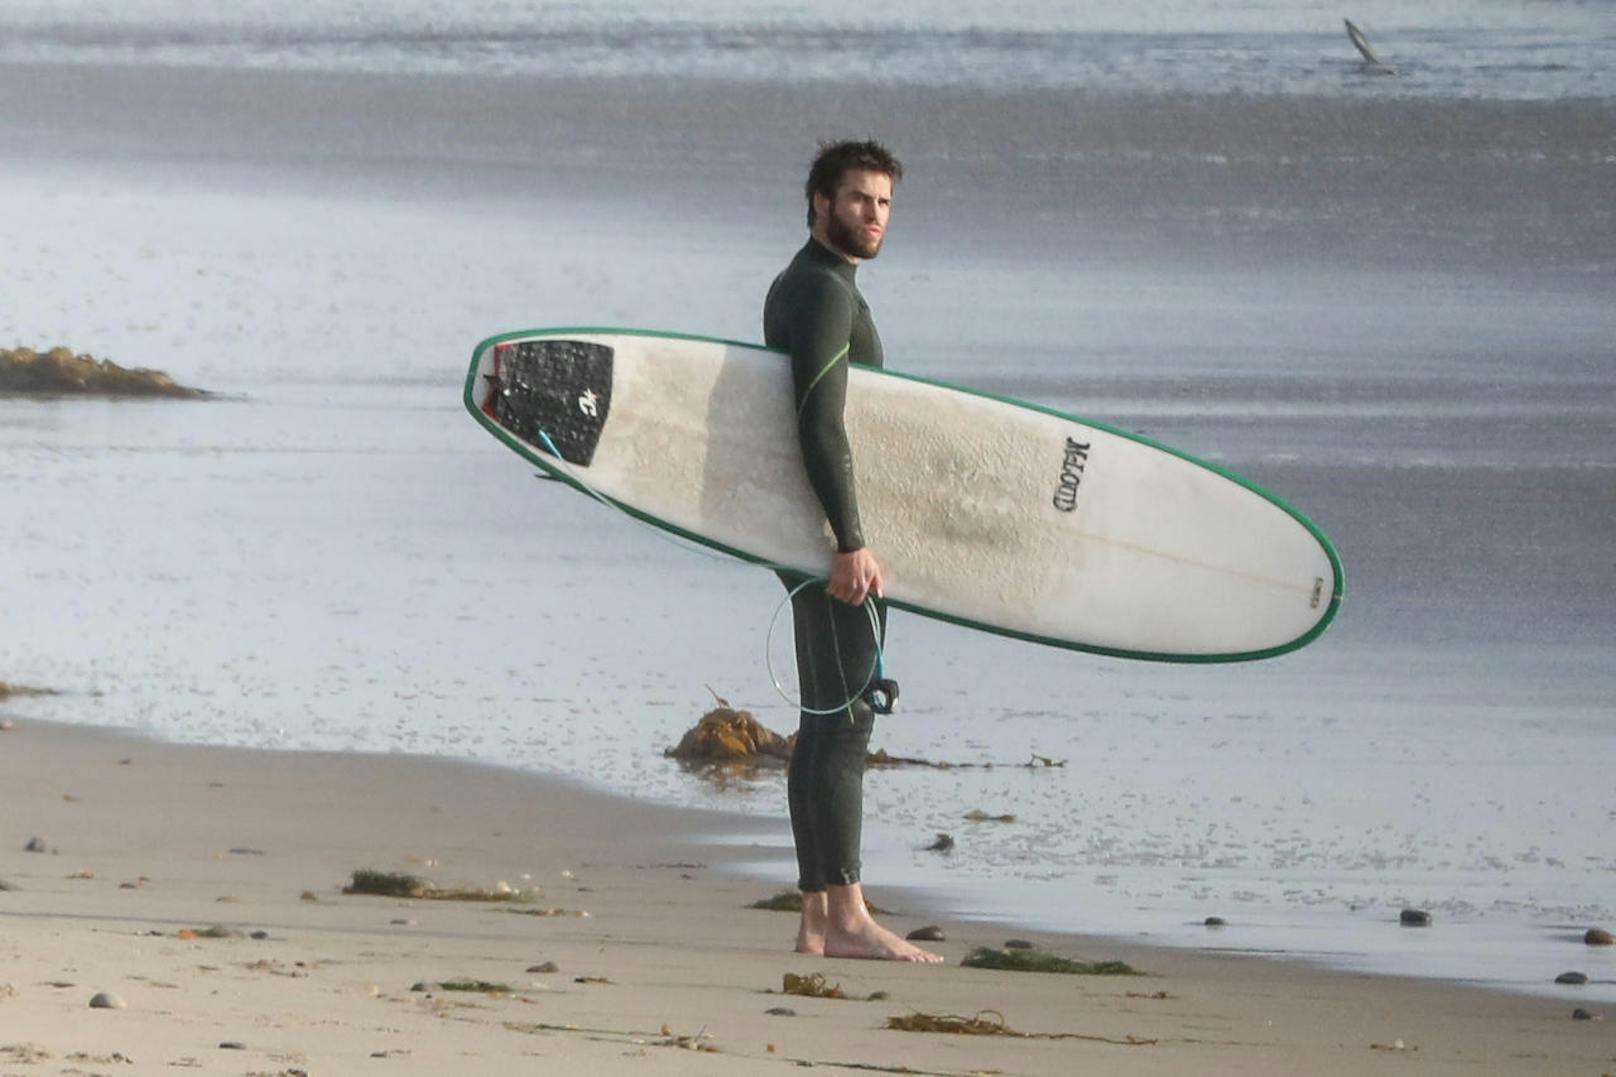 Deshalb machten sich Liam (auf dem Foto) und Luke auf an den Strand, um sich in die Fluten zu stürzen